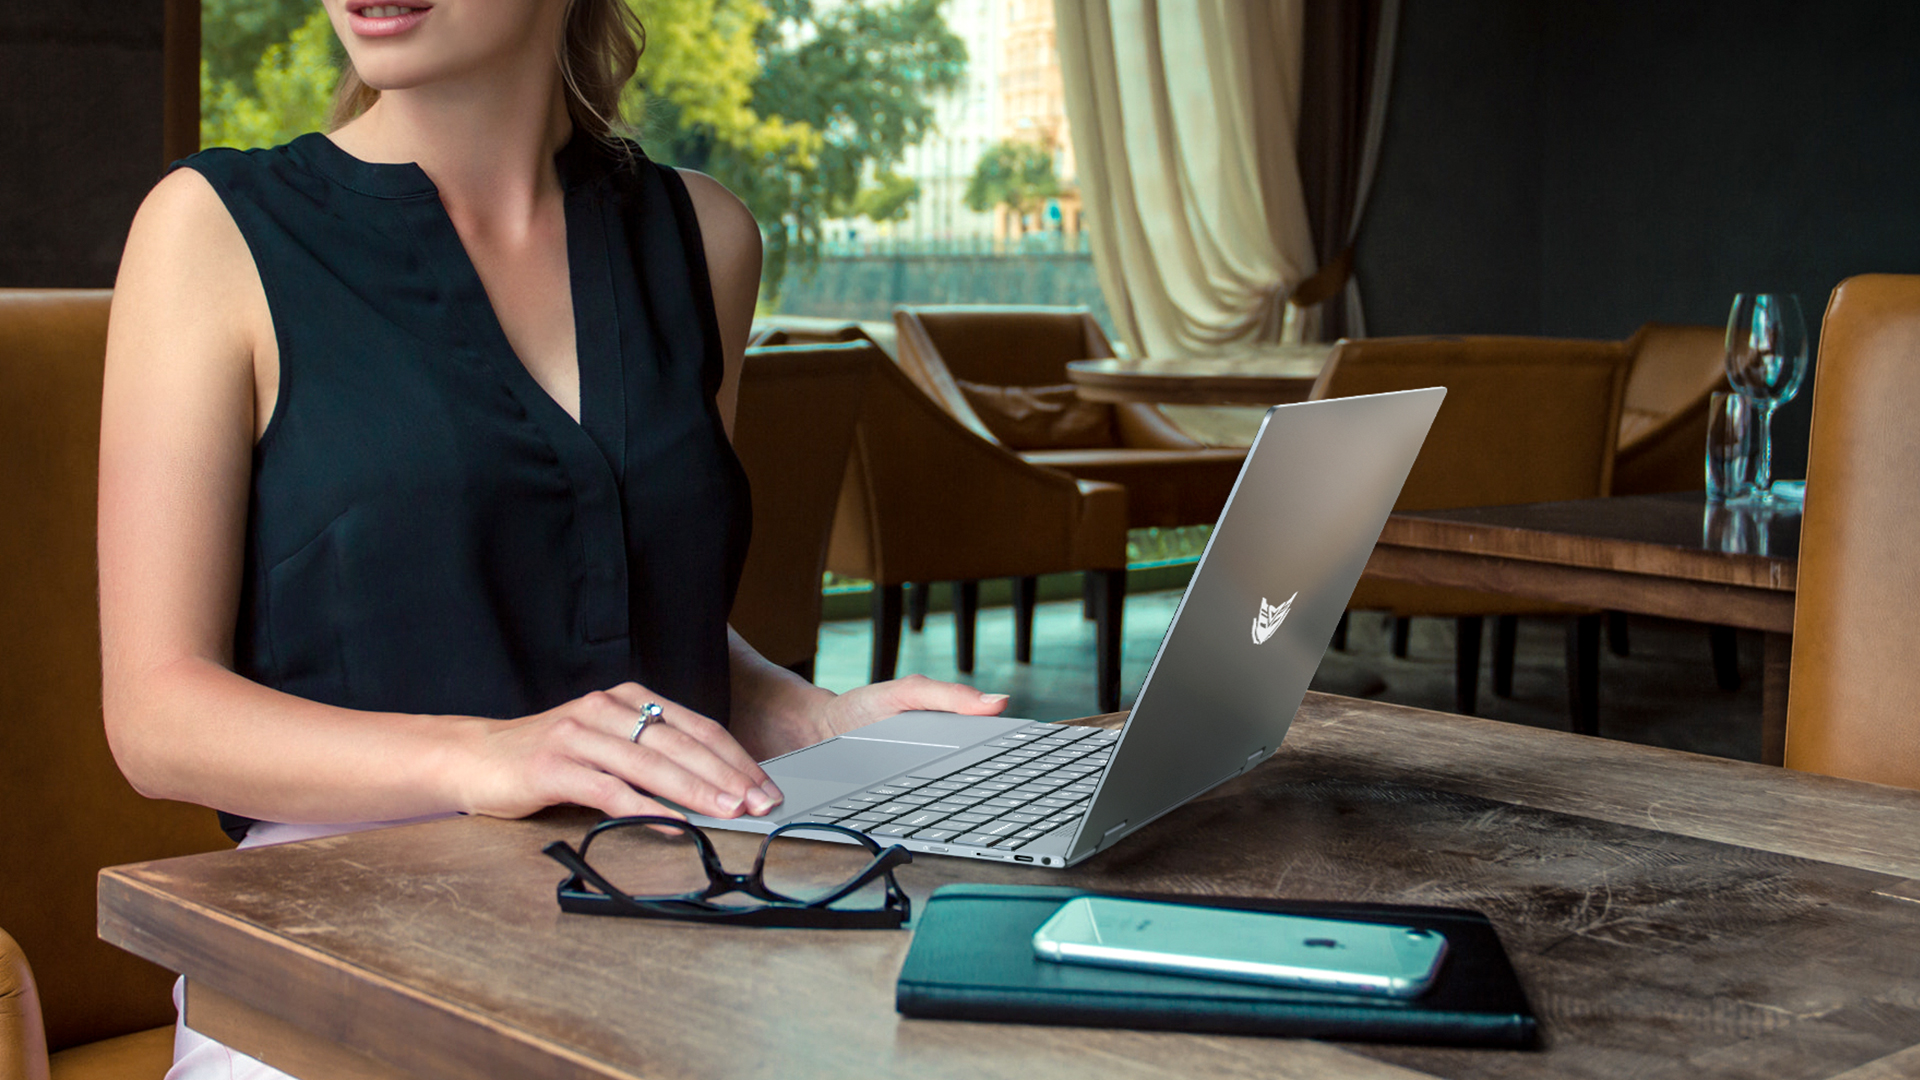 คำอธิบายเพิ่มเติมเกี่ยวกับ BMAX MaxBook Y13 2-in-1 laptop หมุน 360 Yoga องศา จอ 13.3 นิ้ว Multi-touch Ultrabook Windows 10 Pro ลิขสิทธิ์แท้ Intel Celeron Quad-Core 8GB RAM 256GB SSD โน๊คบุ๊ค